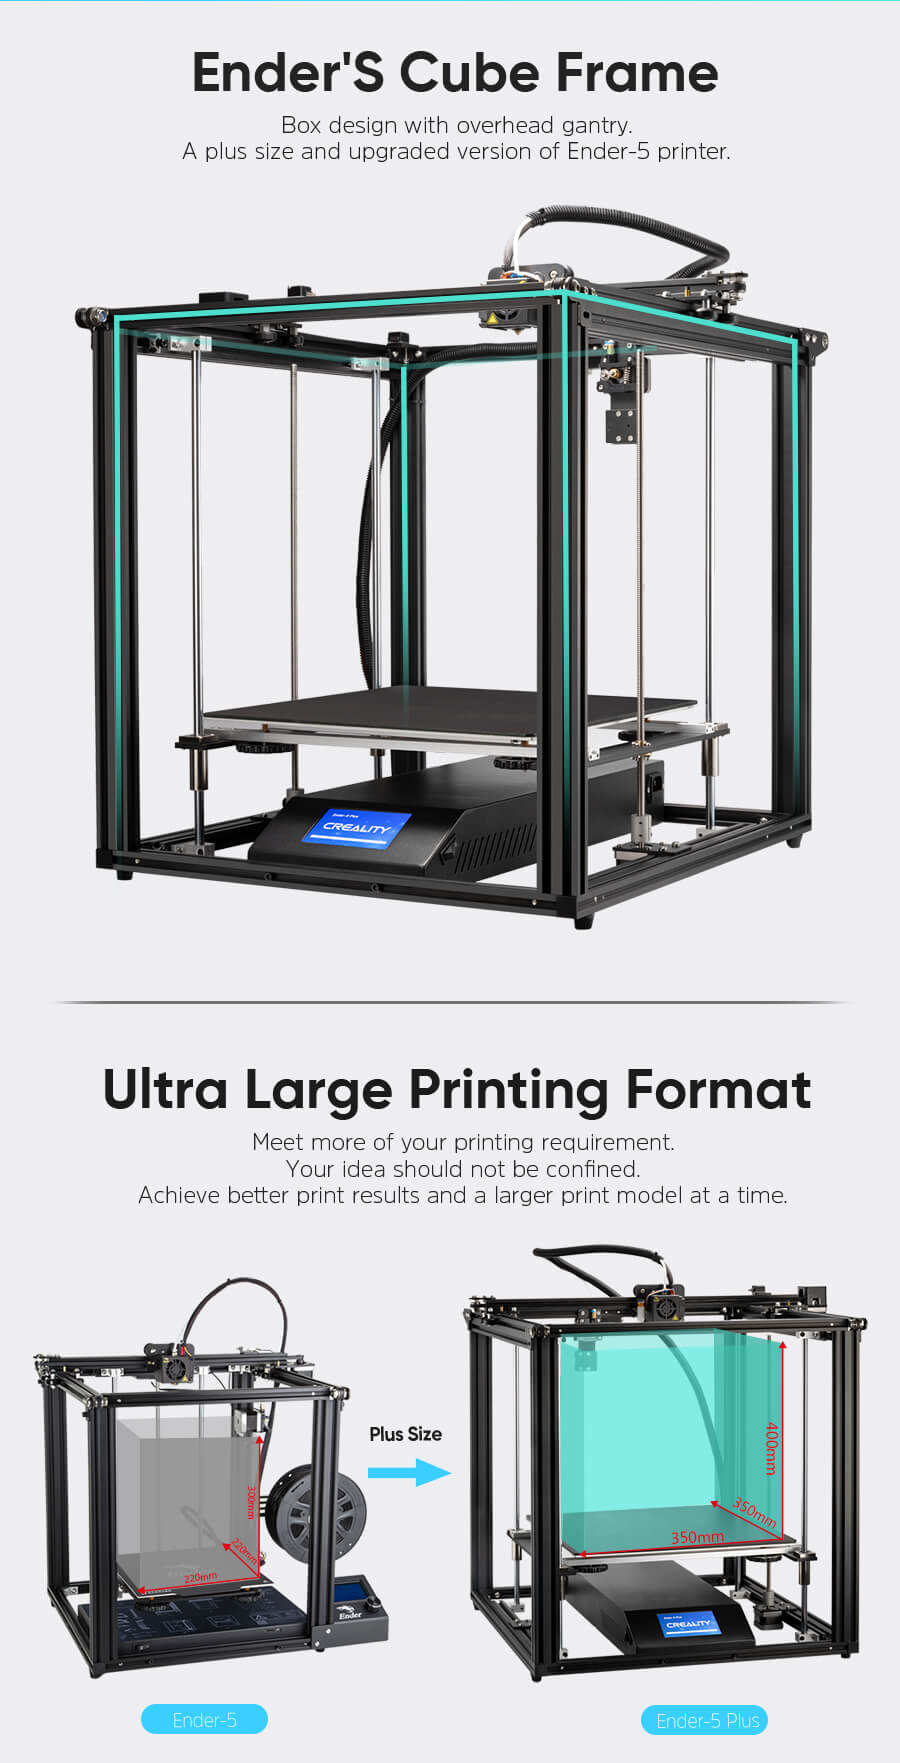 Creality Ender 5 más impresora 3D